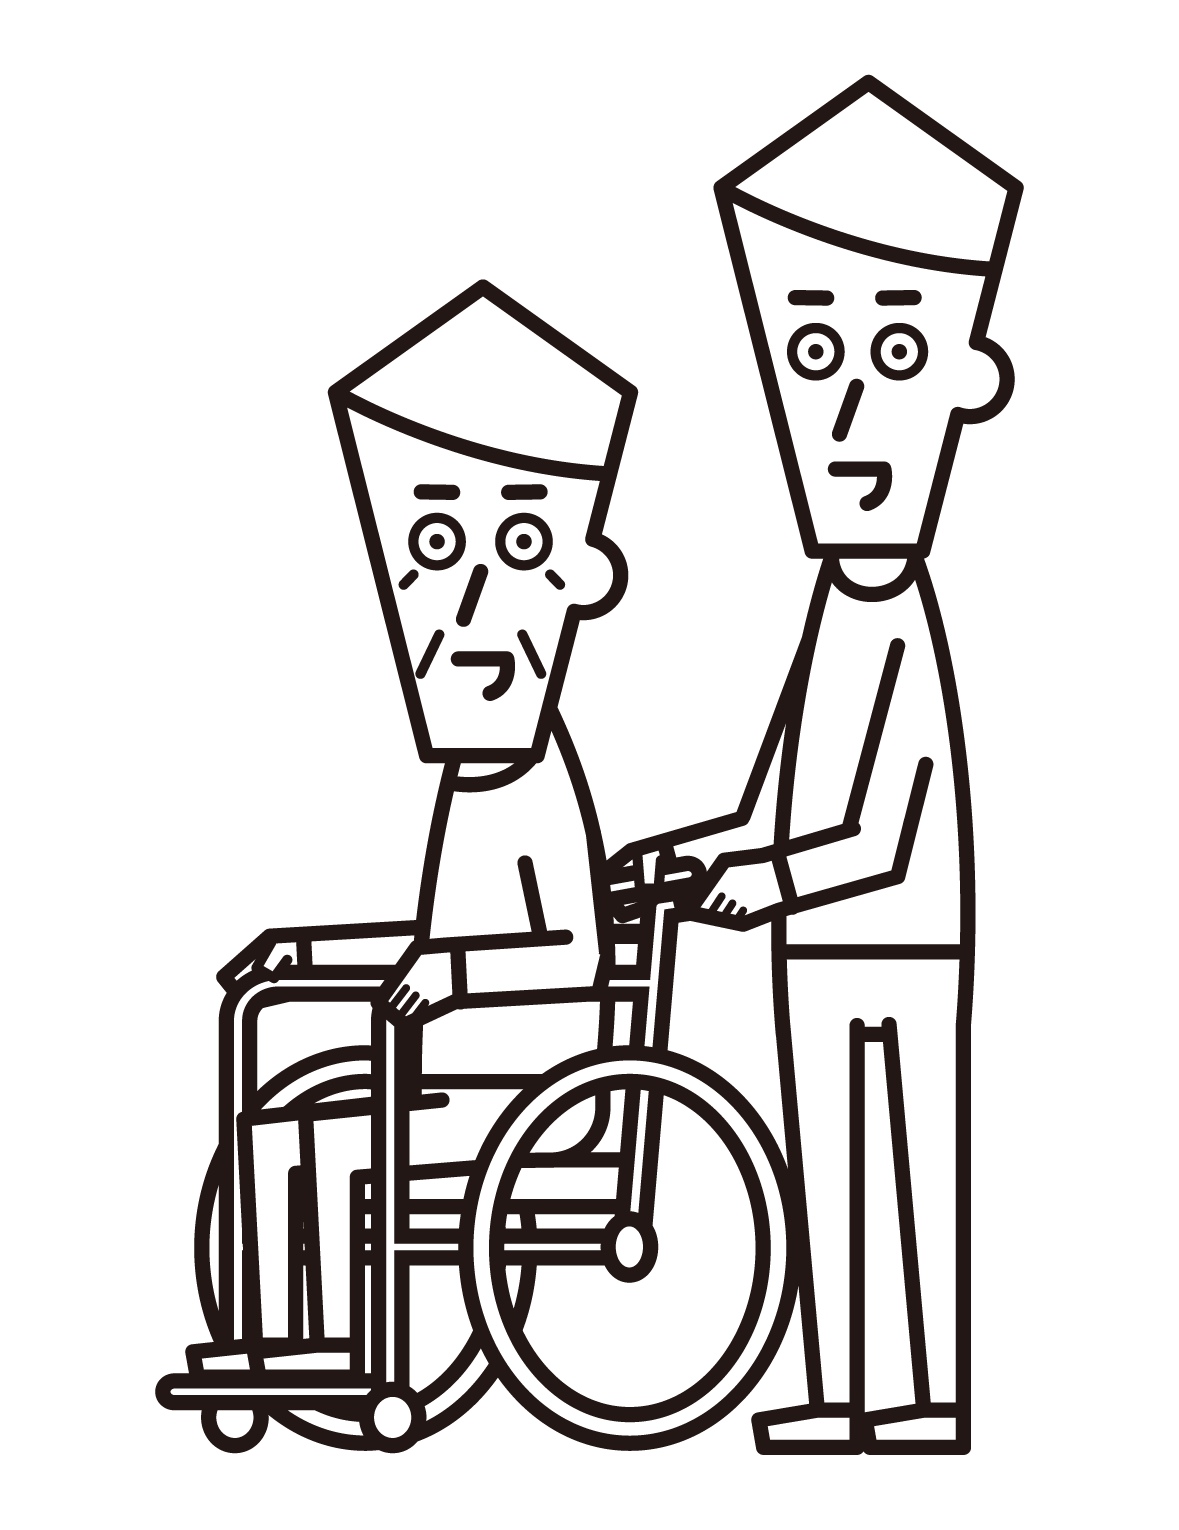 휠체어를 탄 사람(할아버지)과 푸셔(남성)의 그림